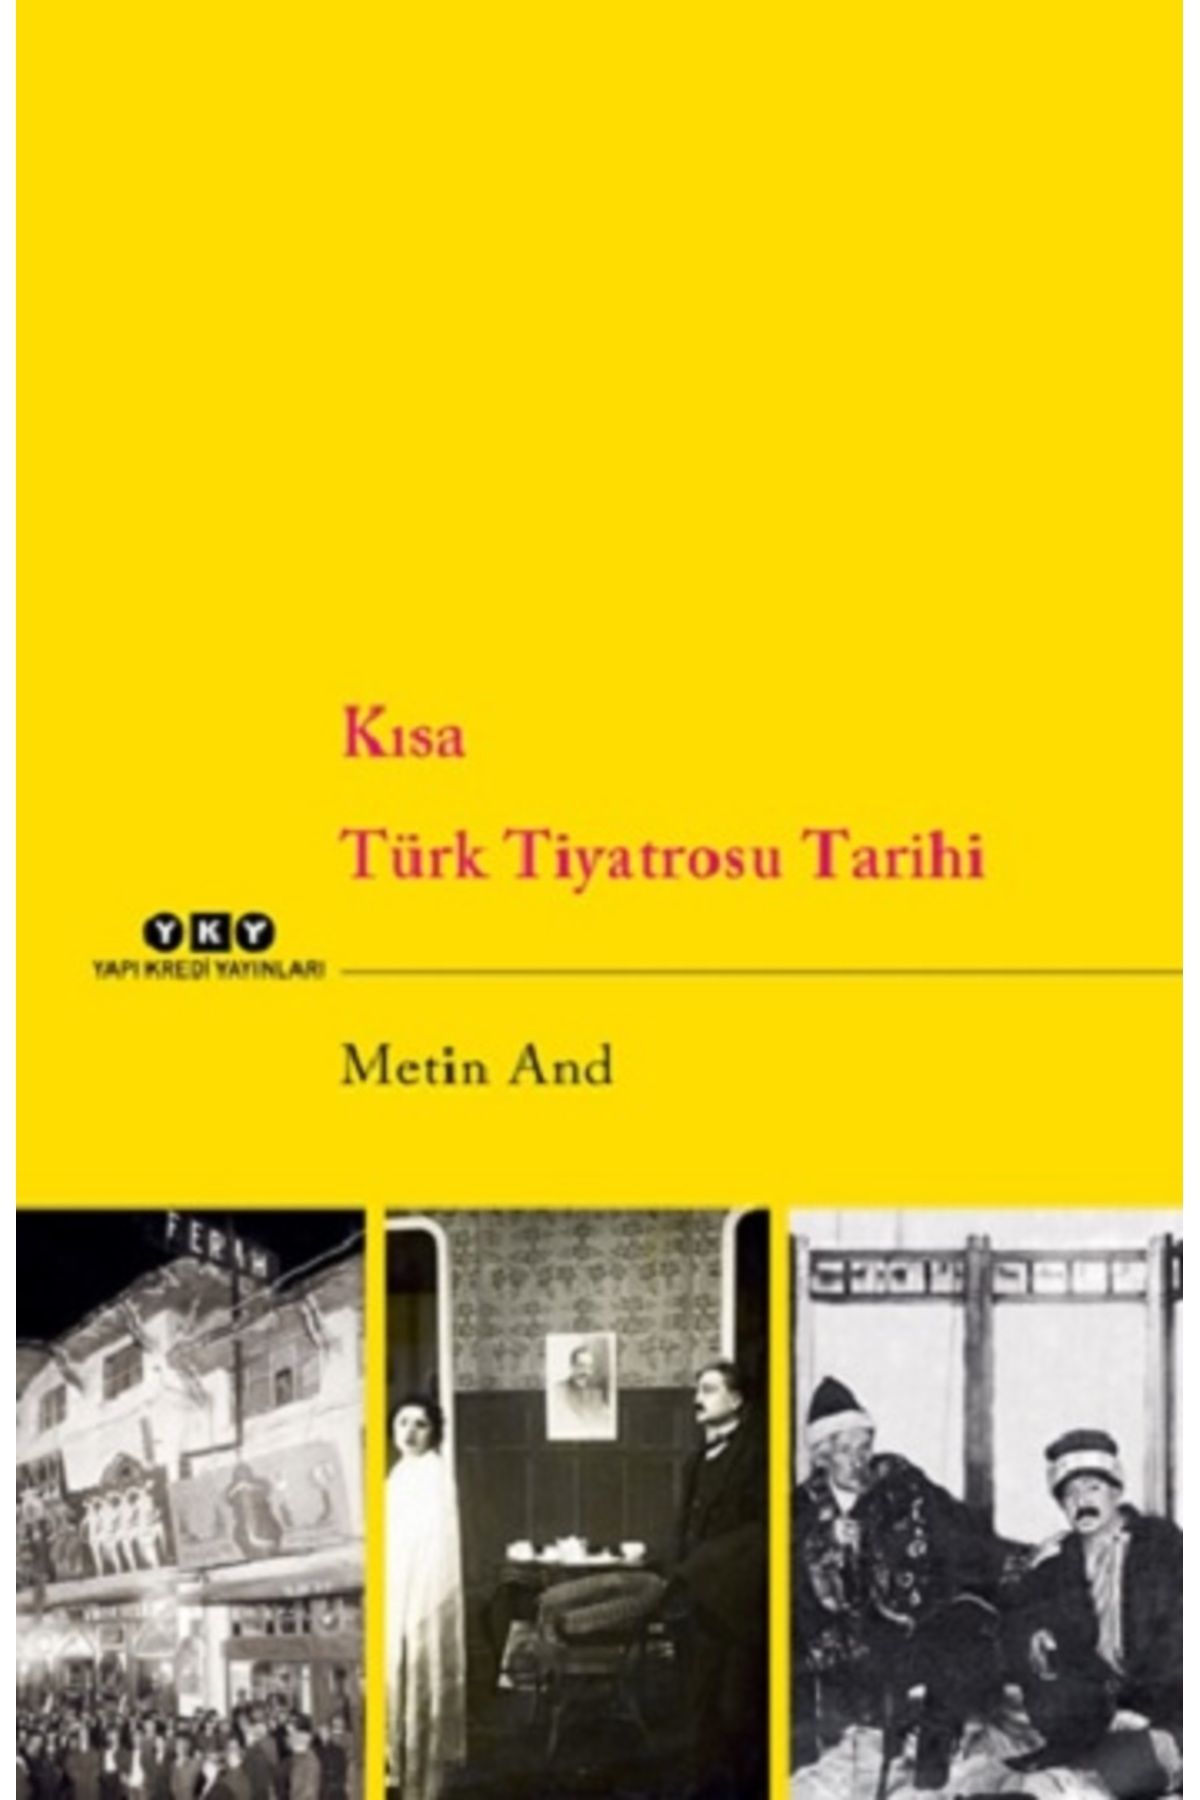 Yapı Kredi Yayınları Kısa Türk Tiyatrosu Tarihi kitabı - Metin And - Yapı Kredi Yayınları